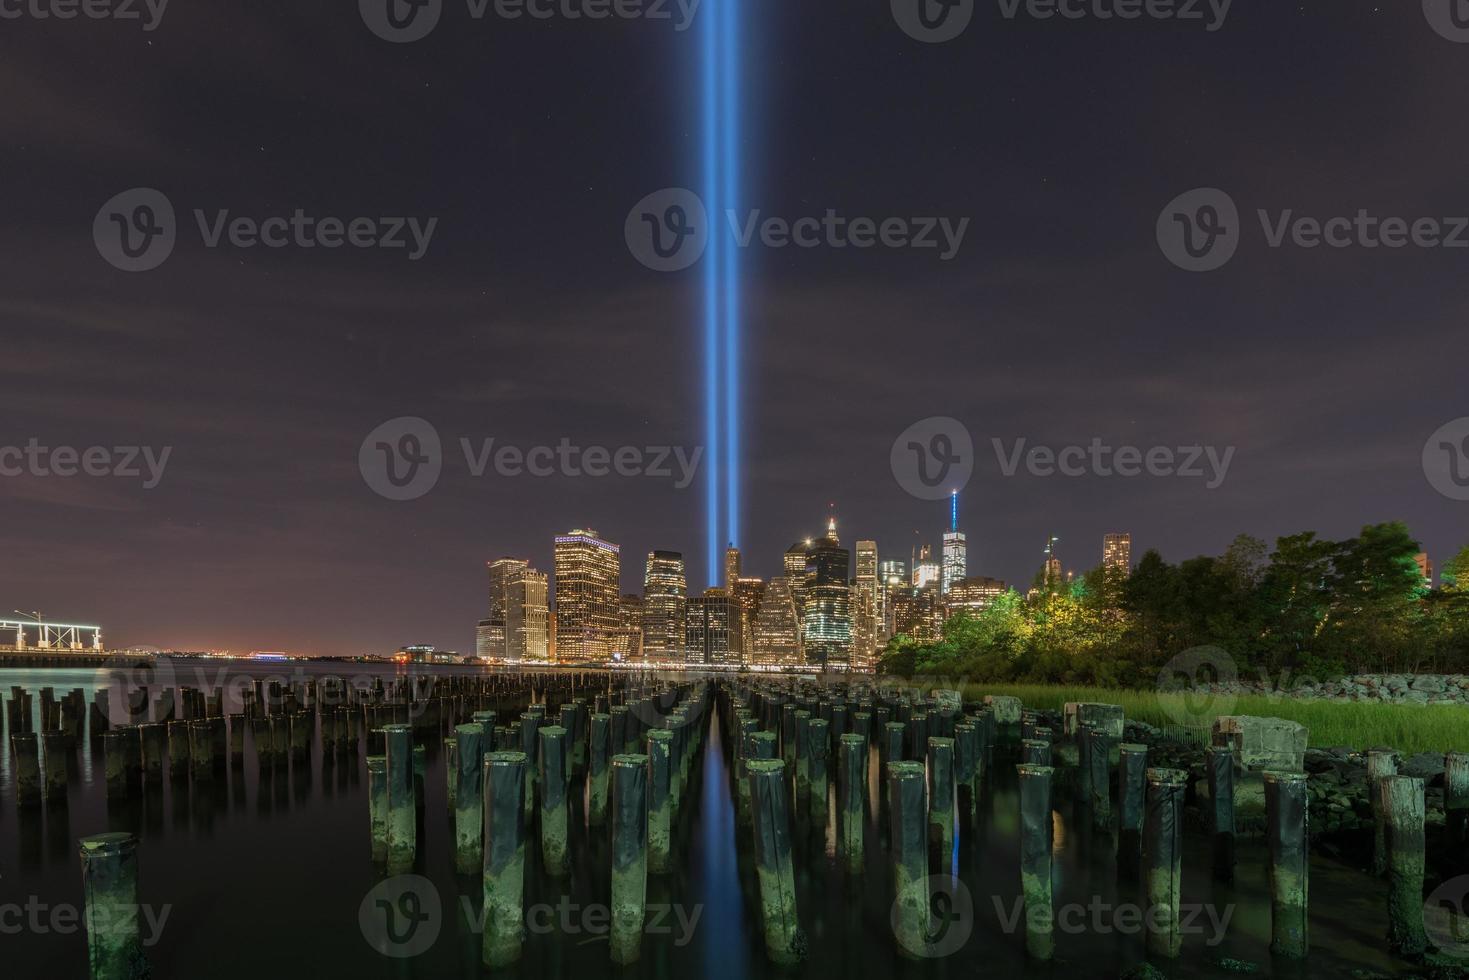 new york city manhattan skyline du centre-ville la nuit avec l'hommage à la lumière à la mémoire du 11 septembre. photo